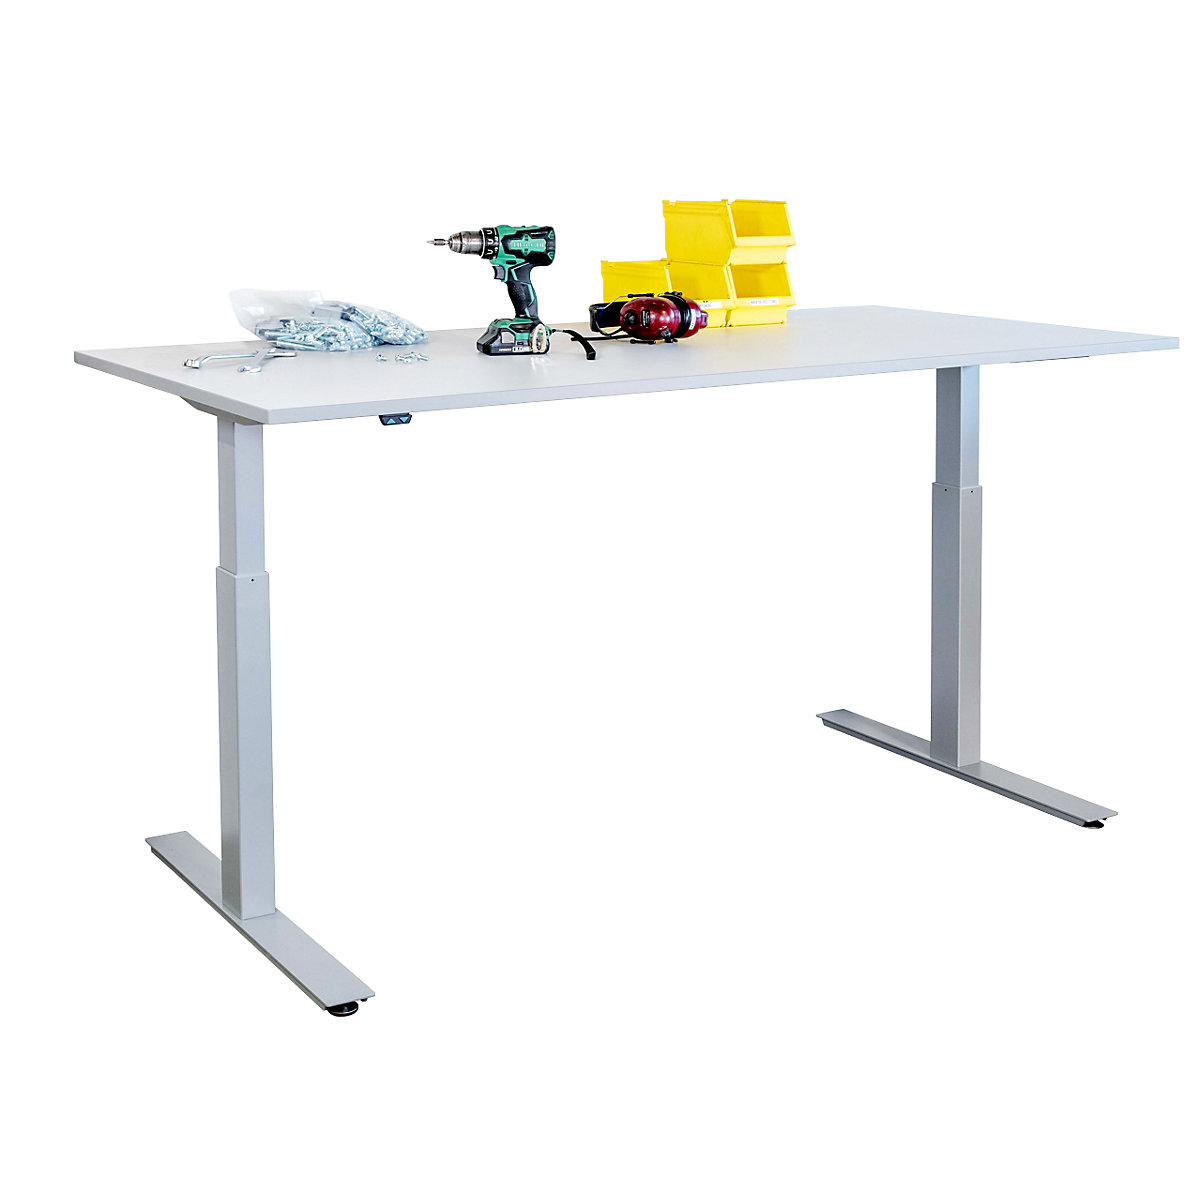 Pracovní stůl s elektrickým přestavováním výšky – eurokraft basic, deska HPL, š x h 1600 x 800 mm-3